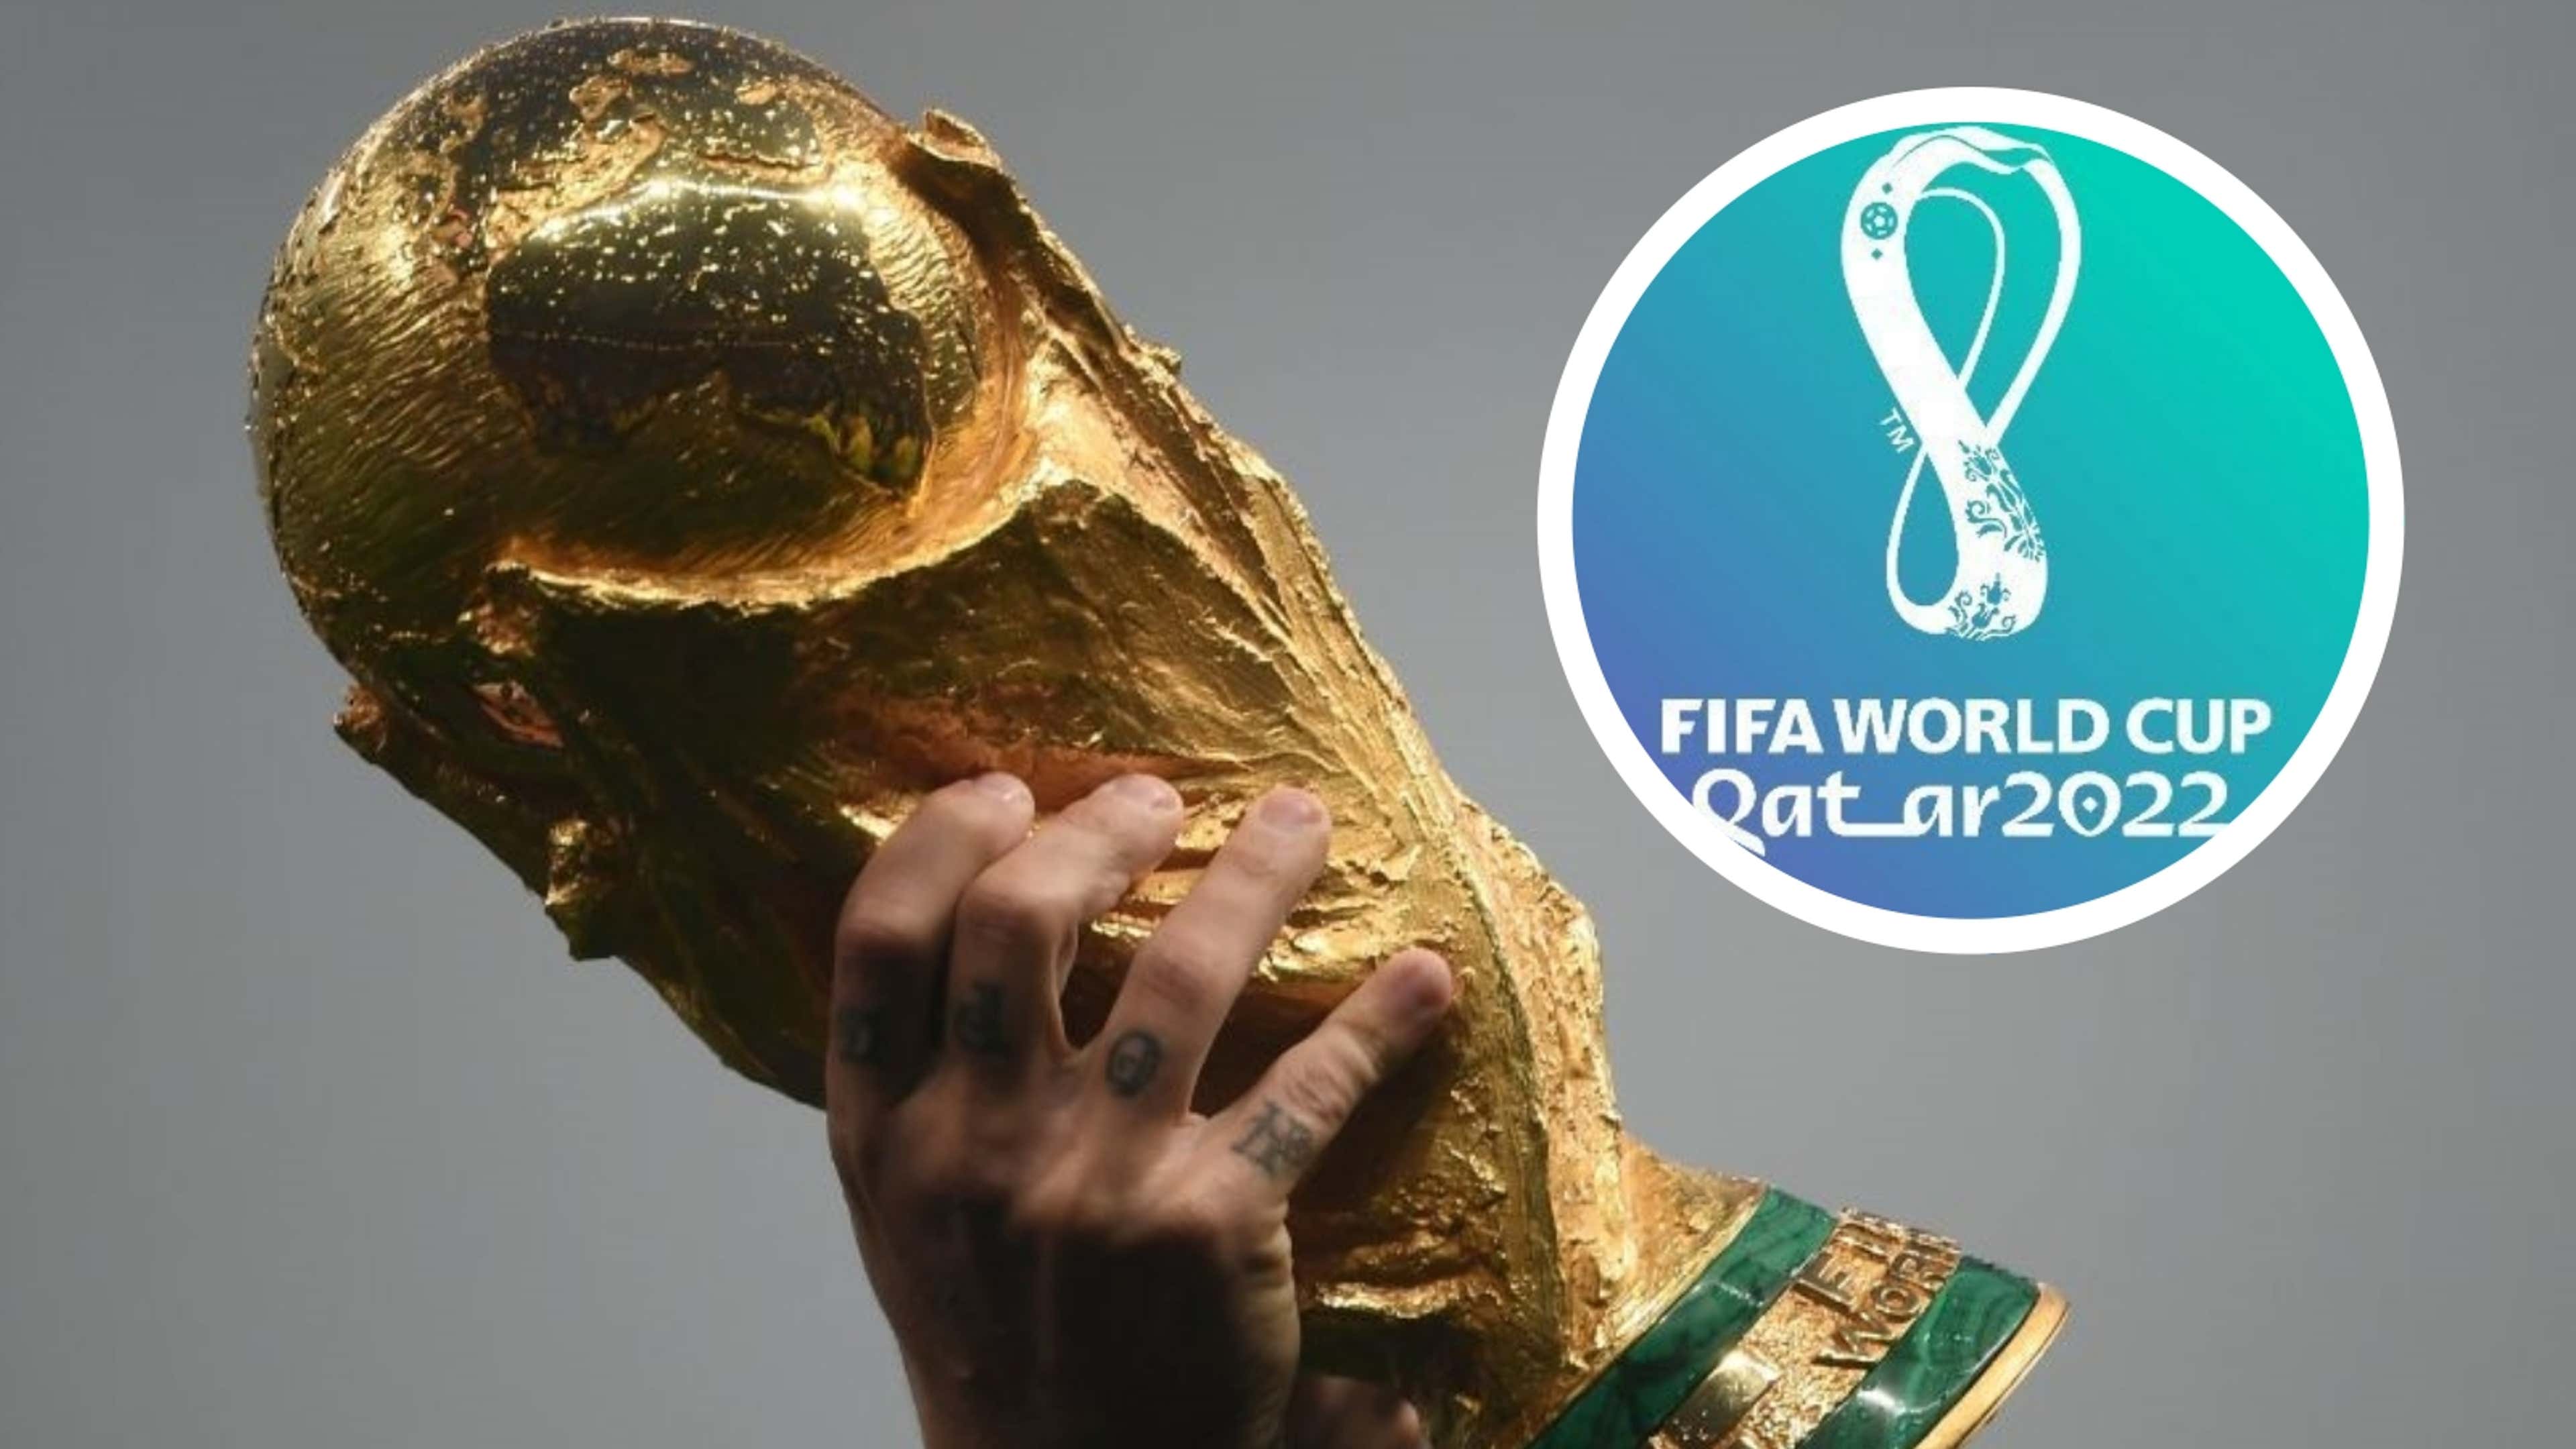 Copa do Mundo 2022: como ficaram os grupos após sorteio da Fifa